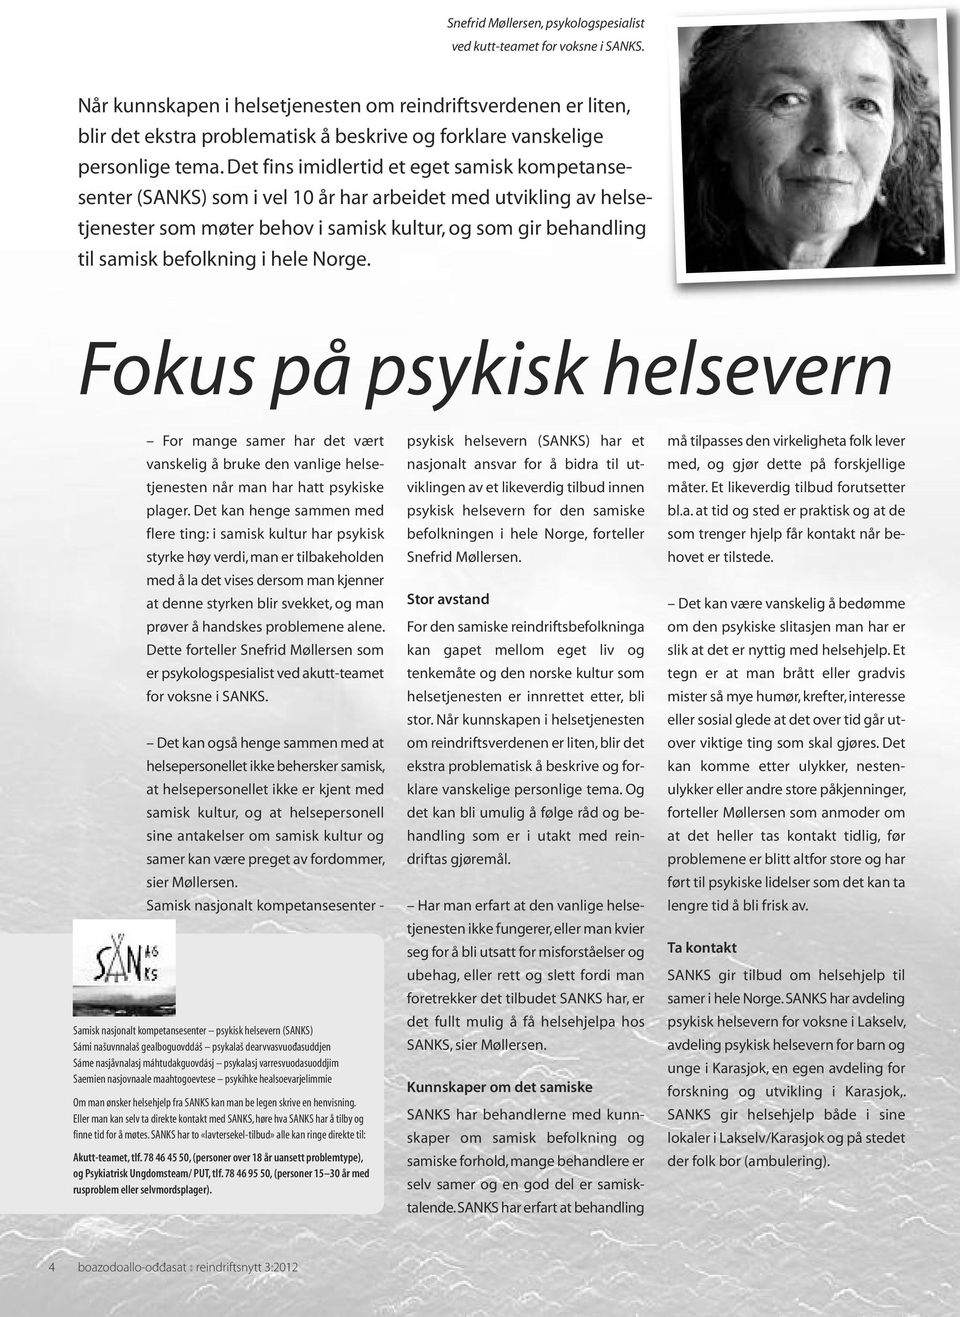 Det fins imidlertid et eget samisk kompetansesenter (SANKS) som i vel 10 år har arbeidet med utvikling av helsetjenester som møter behov i samisk kultur, og som gir behandling til samisk befolkning i